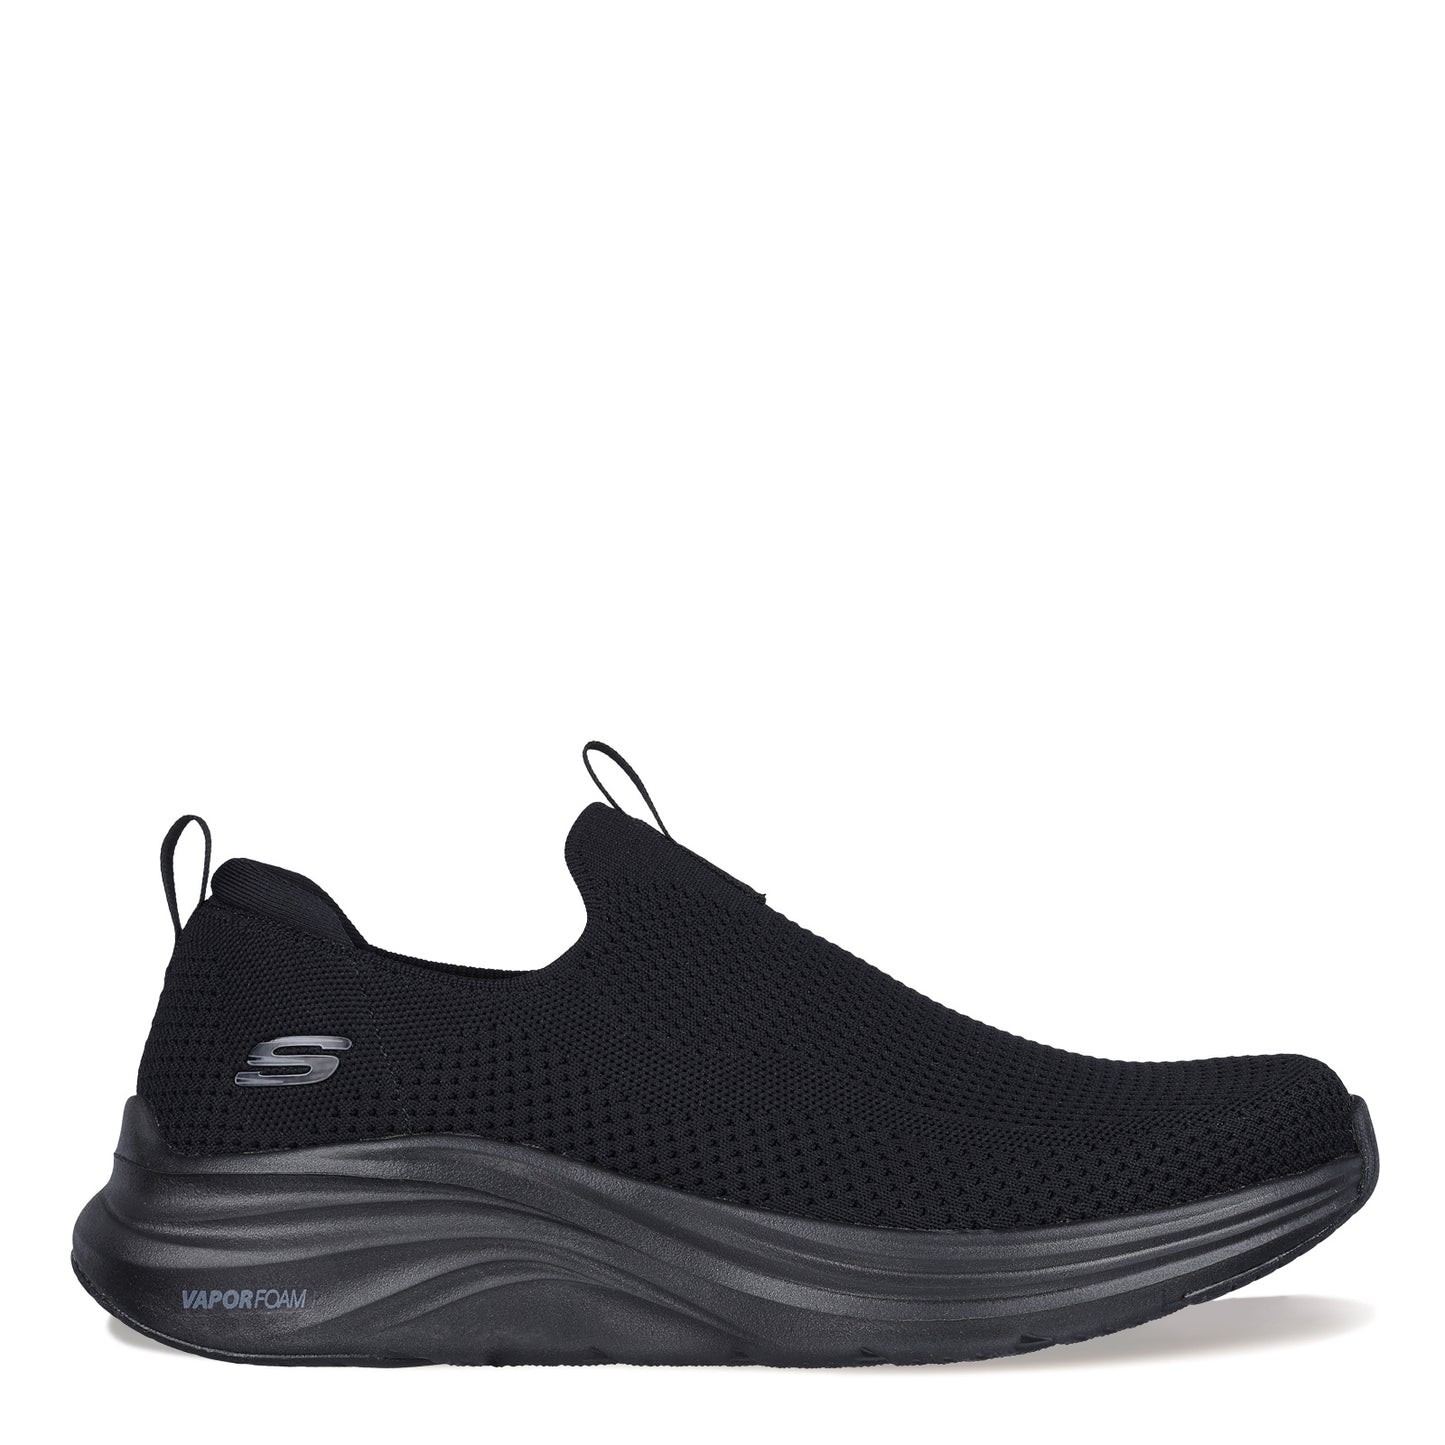 Peltz Shoes  Men's Skechers Vapor Foam – Covert Sneaker - Wide Width Black 232629W-BBK